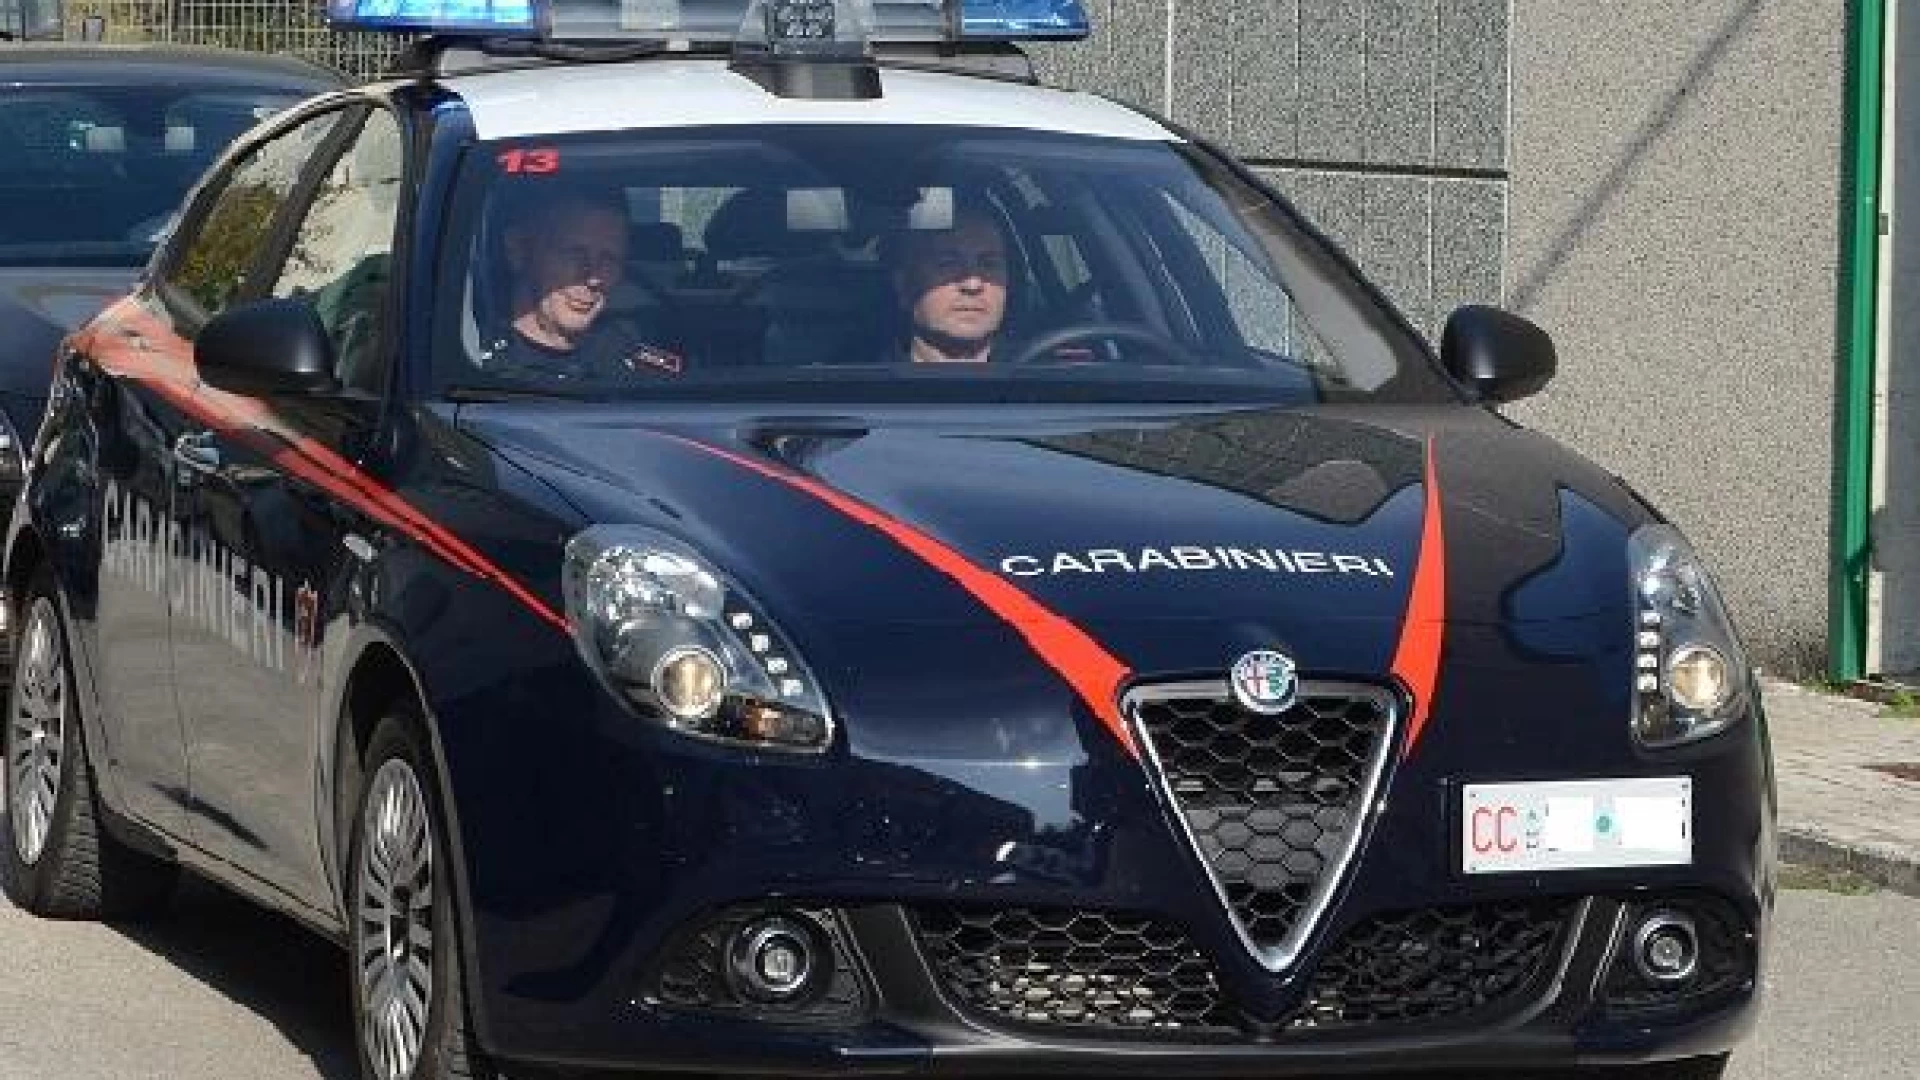 Isernia: Natale sicuro, i Carabinieri intensificano i controlli per le festività. Scoperti animali segregati in un casolare di campagna.